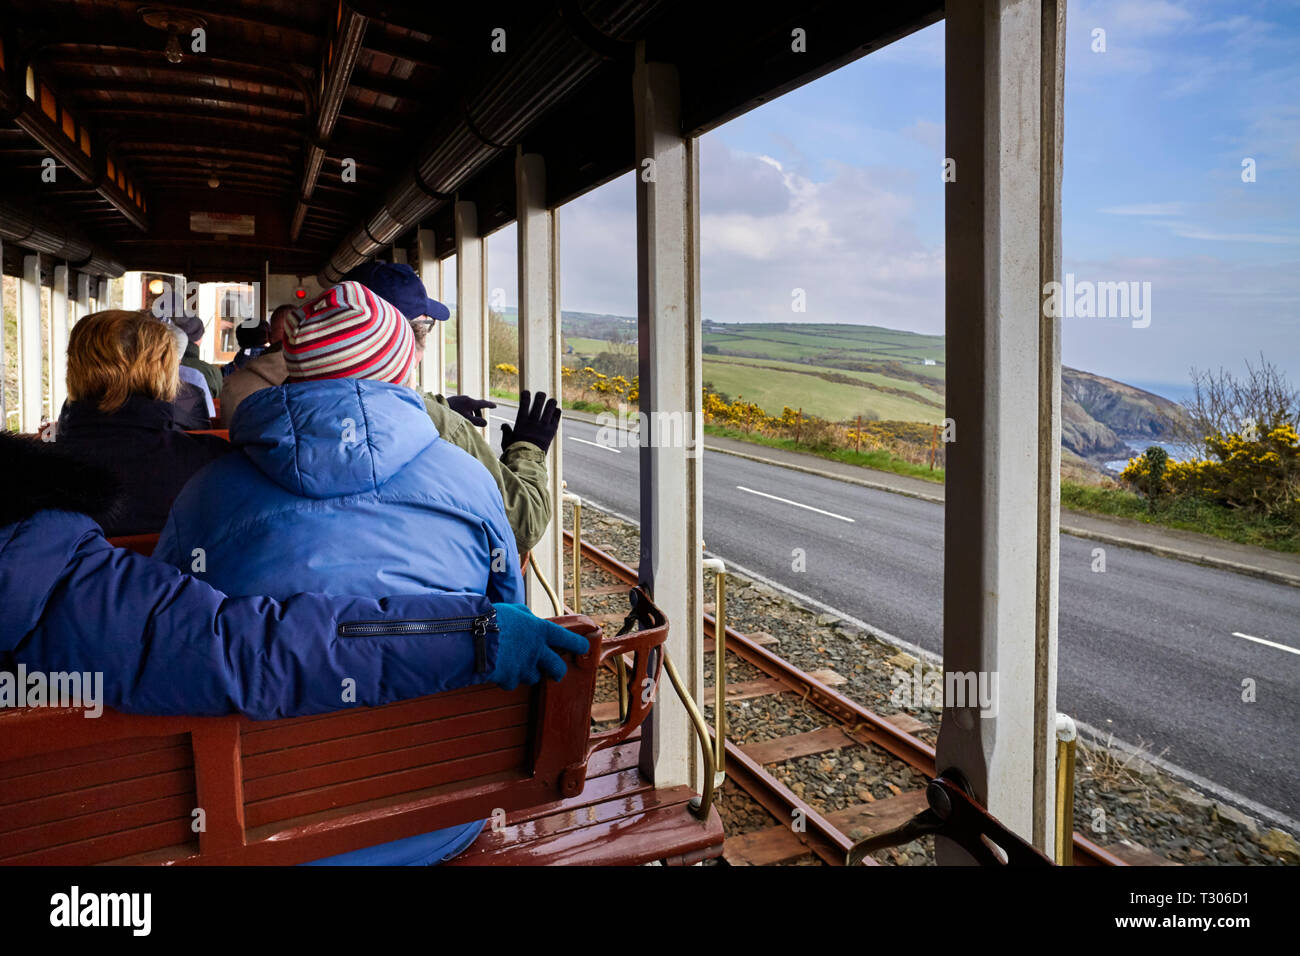 Équitation sur l'arrière d'un bus ouvert MER Manx Electric Railway train sur son chemin à travers la campagne de l'Ile du Nord Banque D'Images